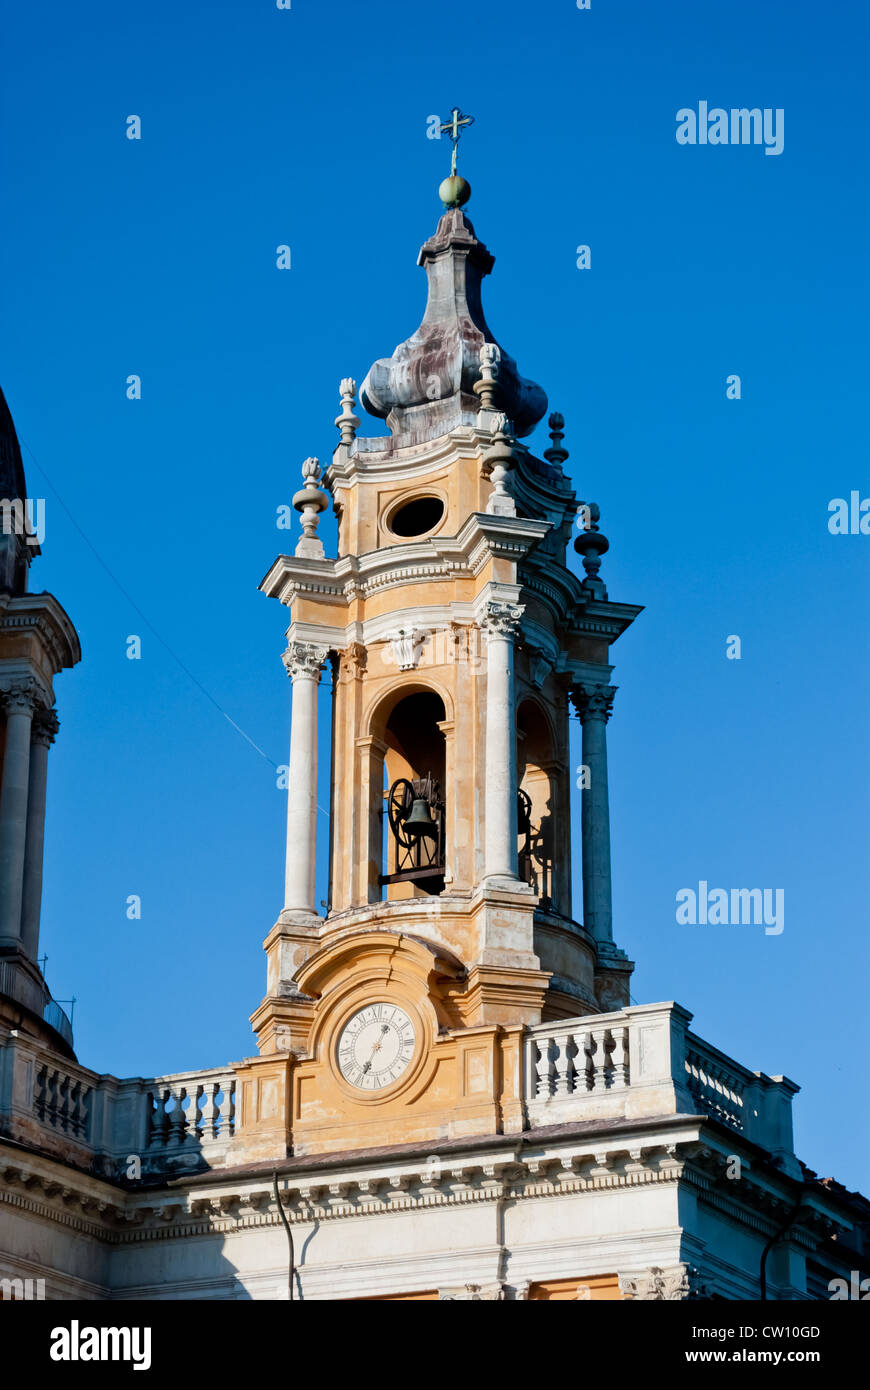 Basilica di Superga torre campanaria dettaglio, Torino, Italia Foto Stock